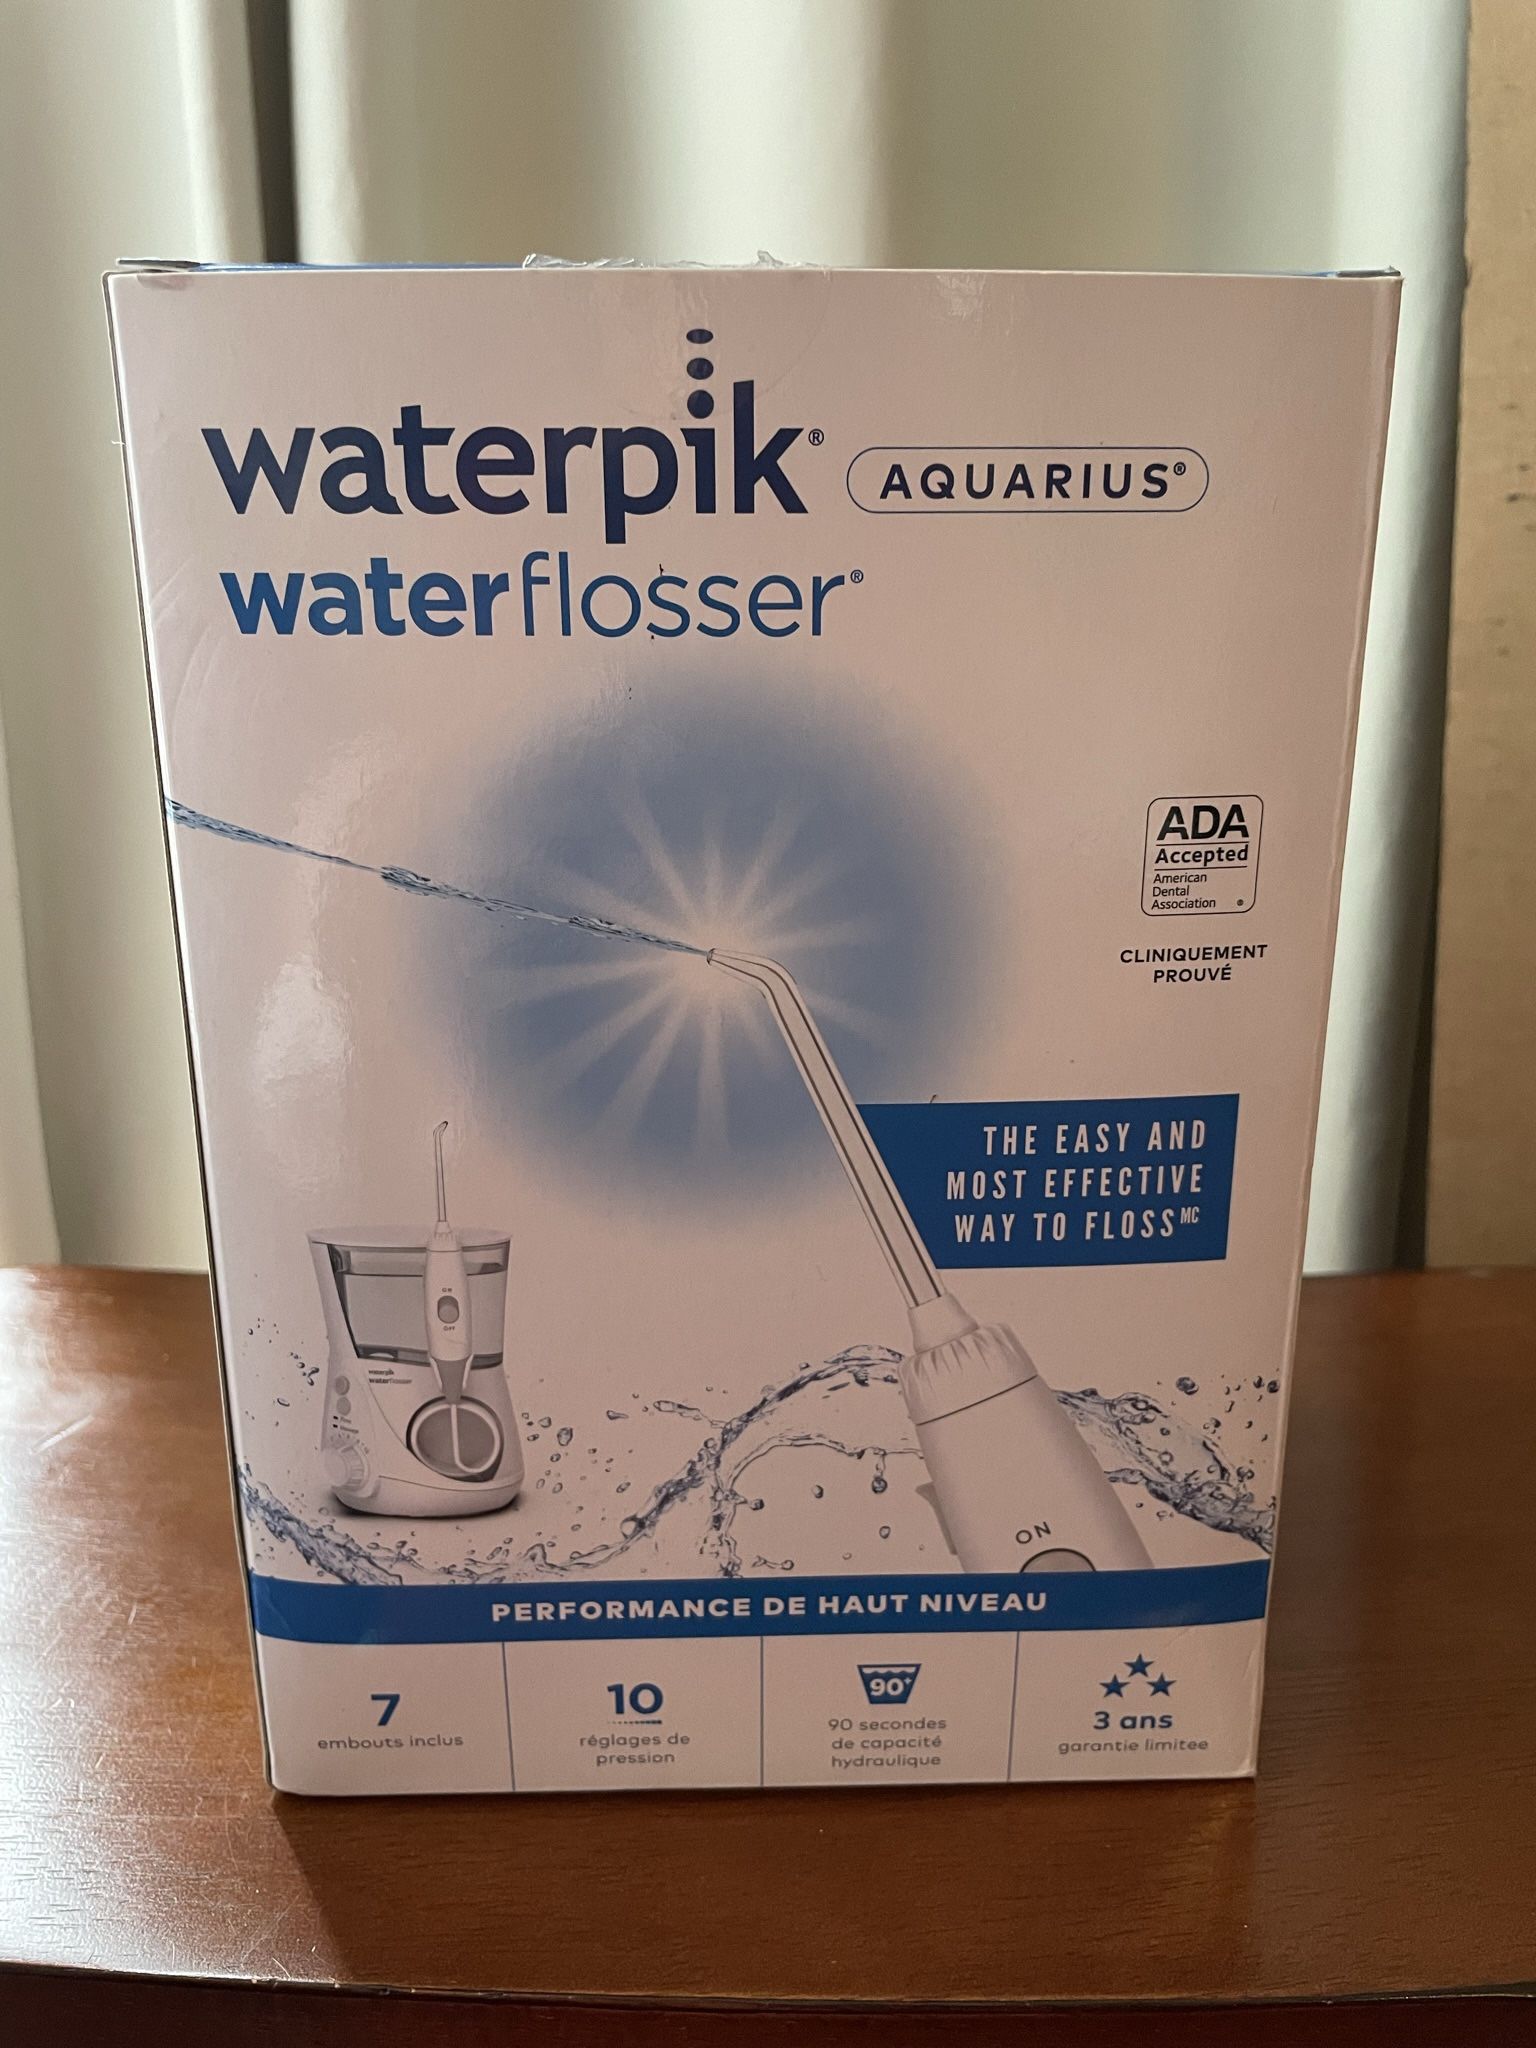 NEW Waterpik Water Flosser (Aquarius)